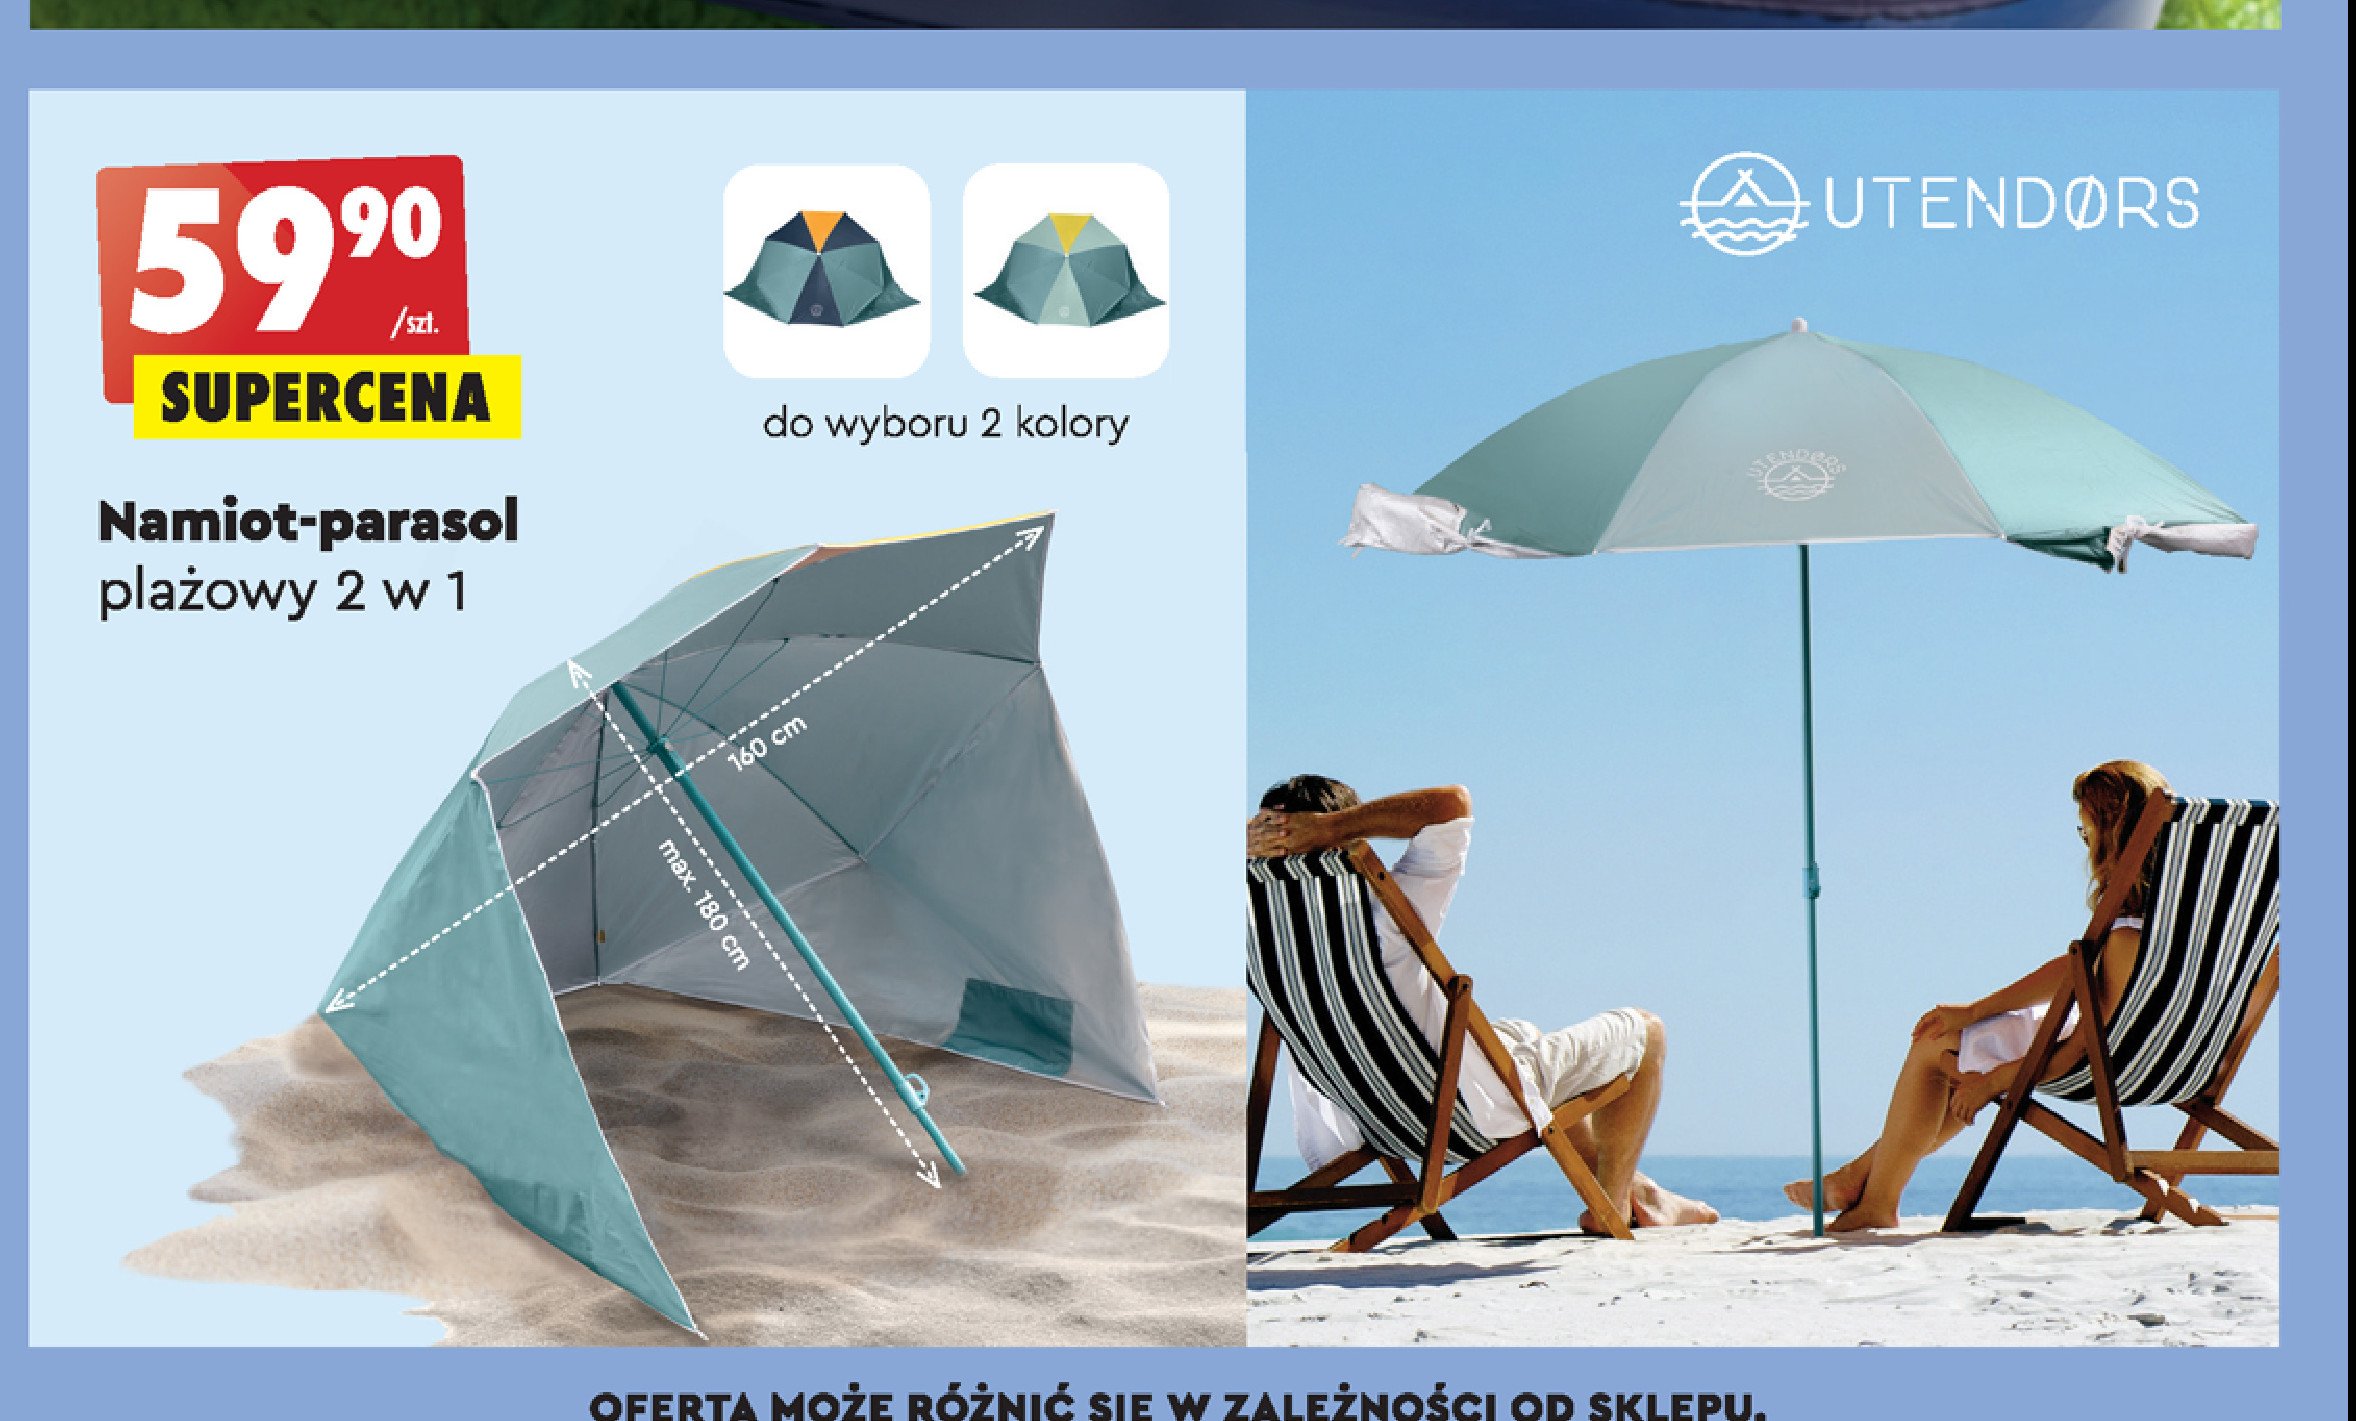 Namiot-parasol Utendors promocje